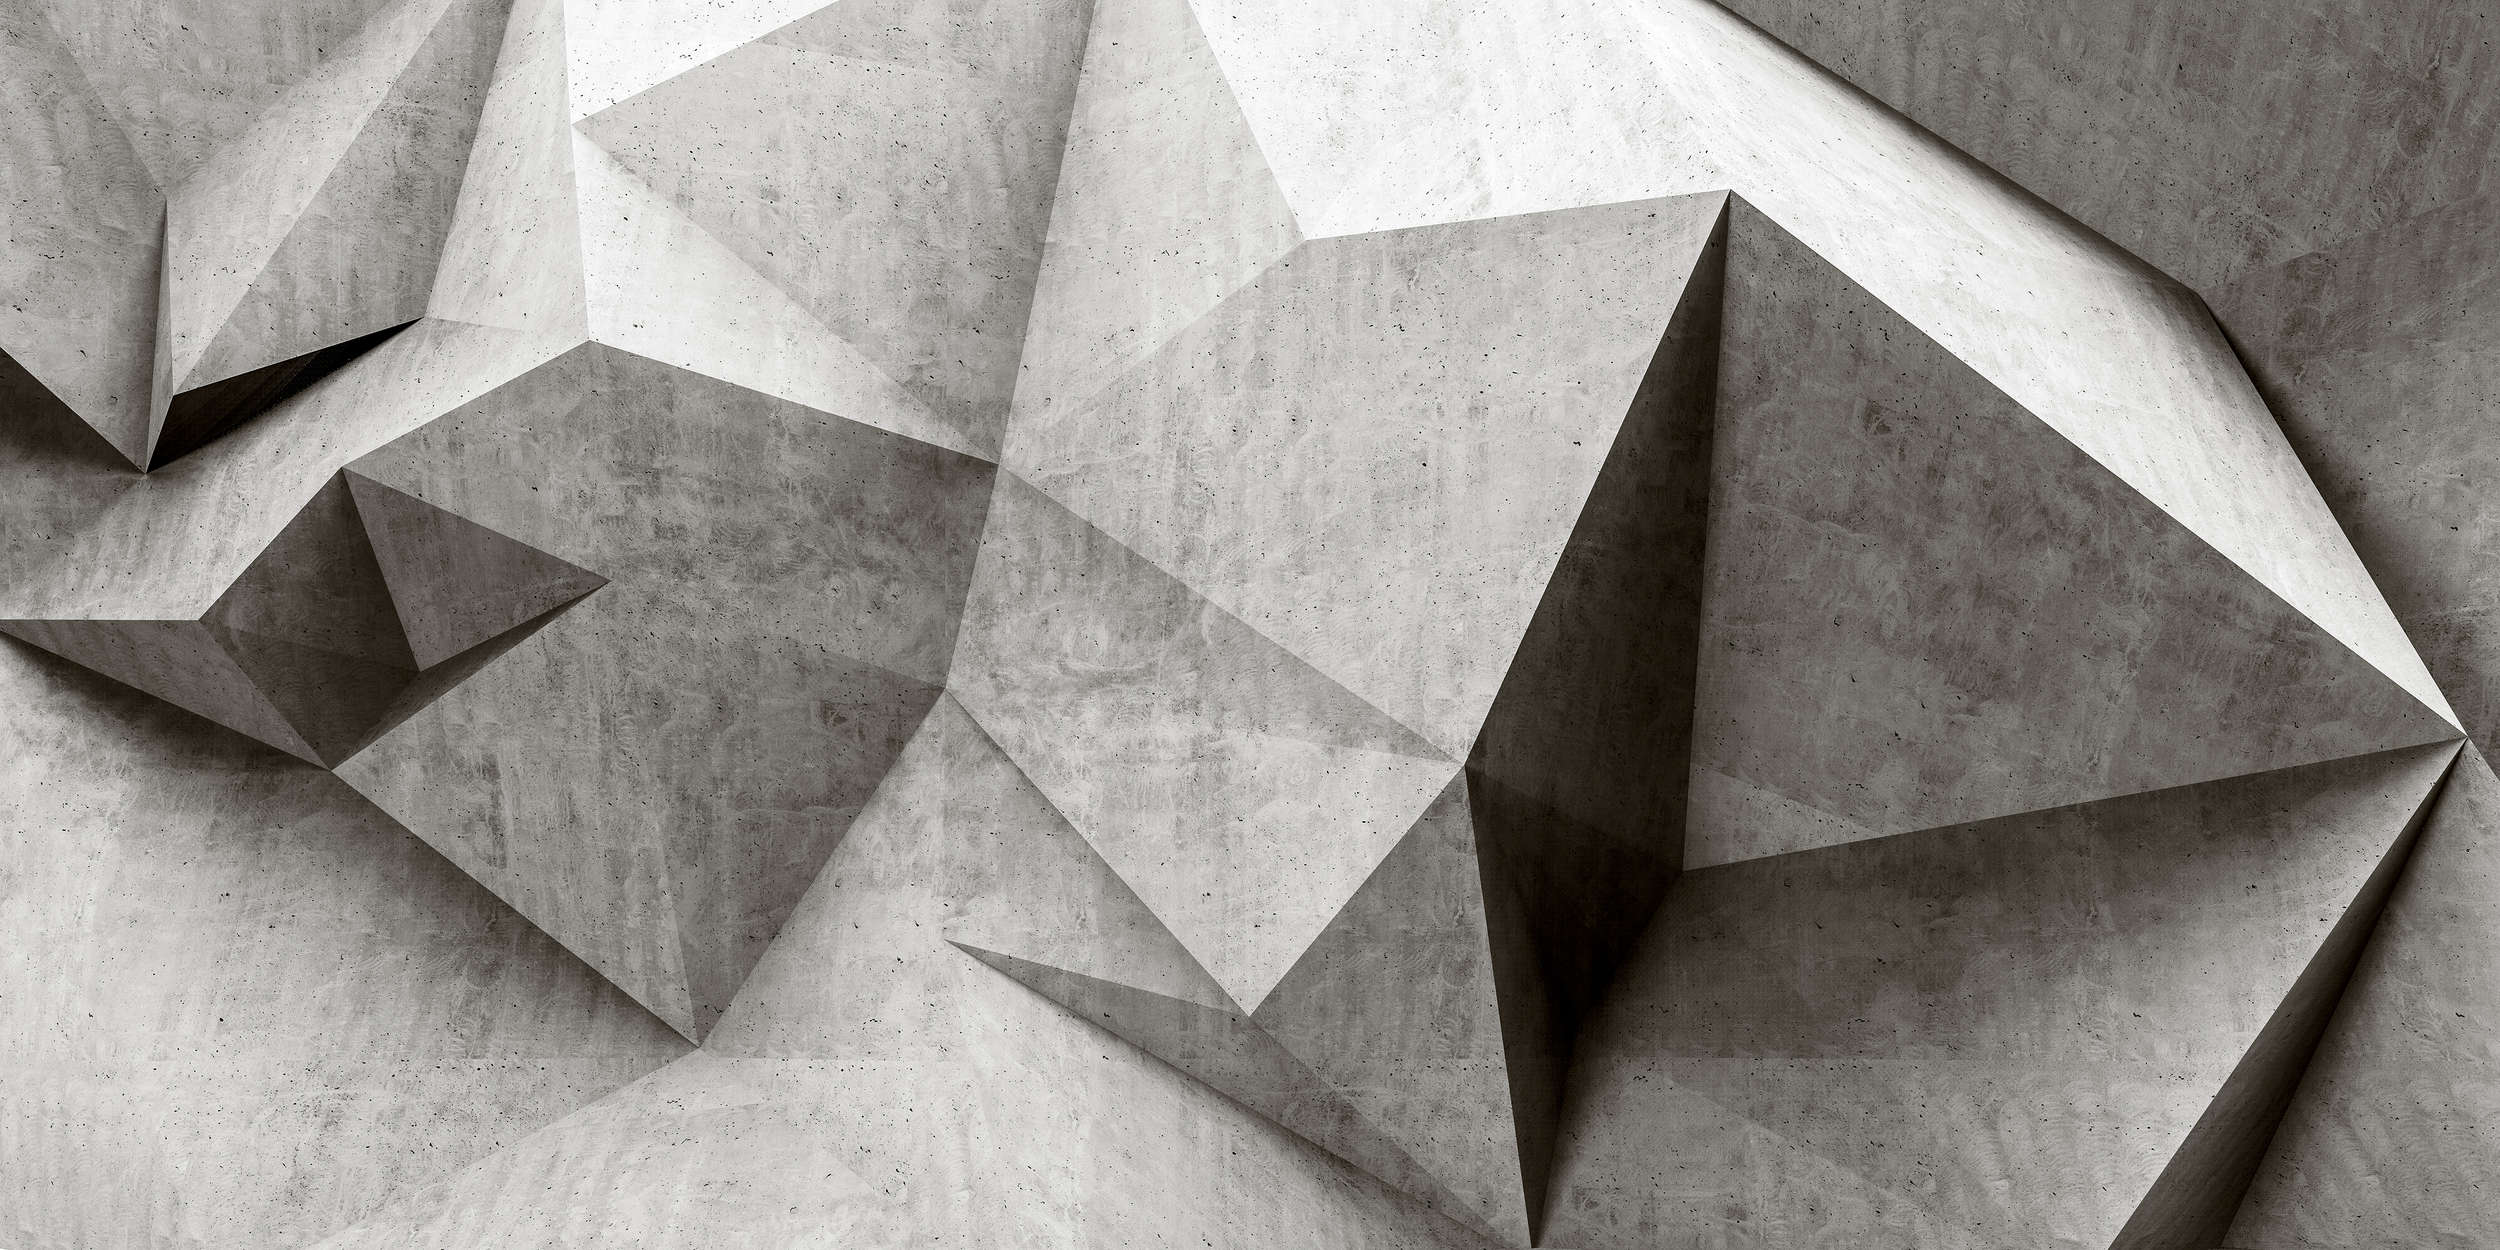             Boulder 1 - Papel Pintado Polígonos de Hormigón 3D - Gris, Negro | Vellón liso mate
        